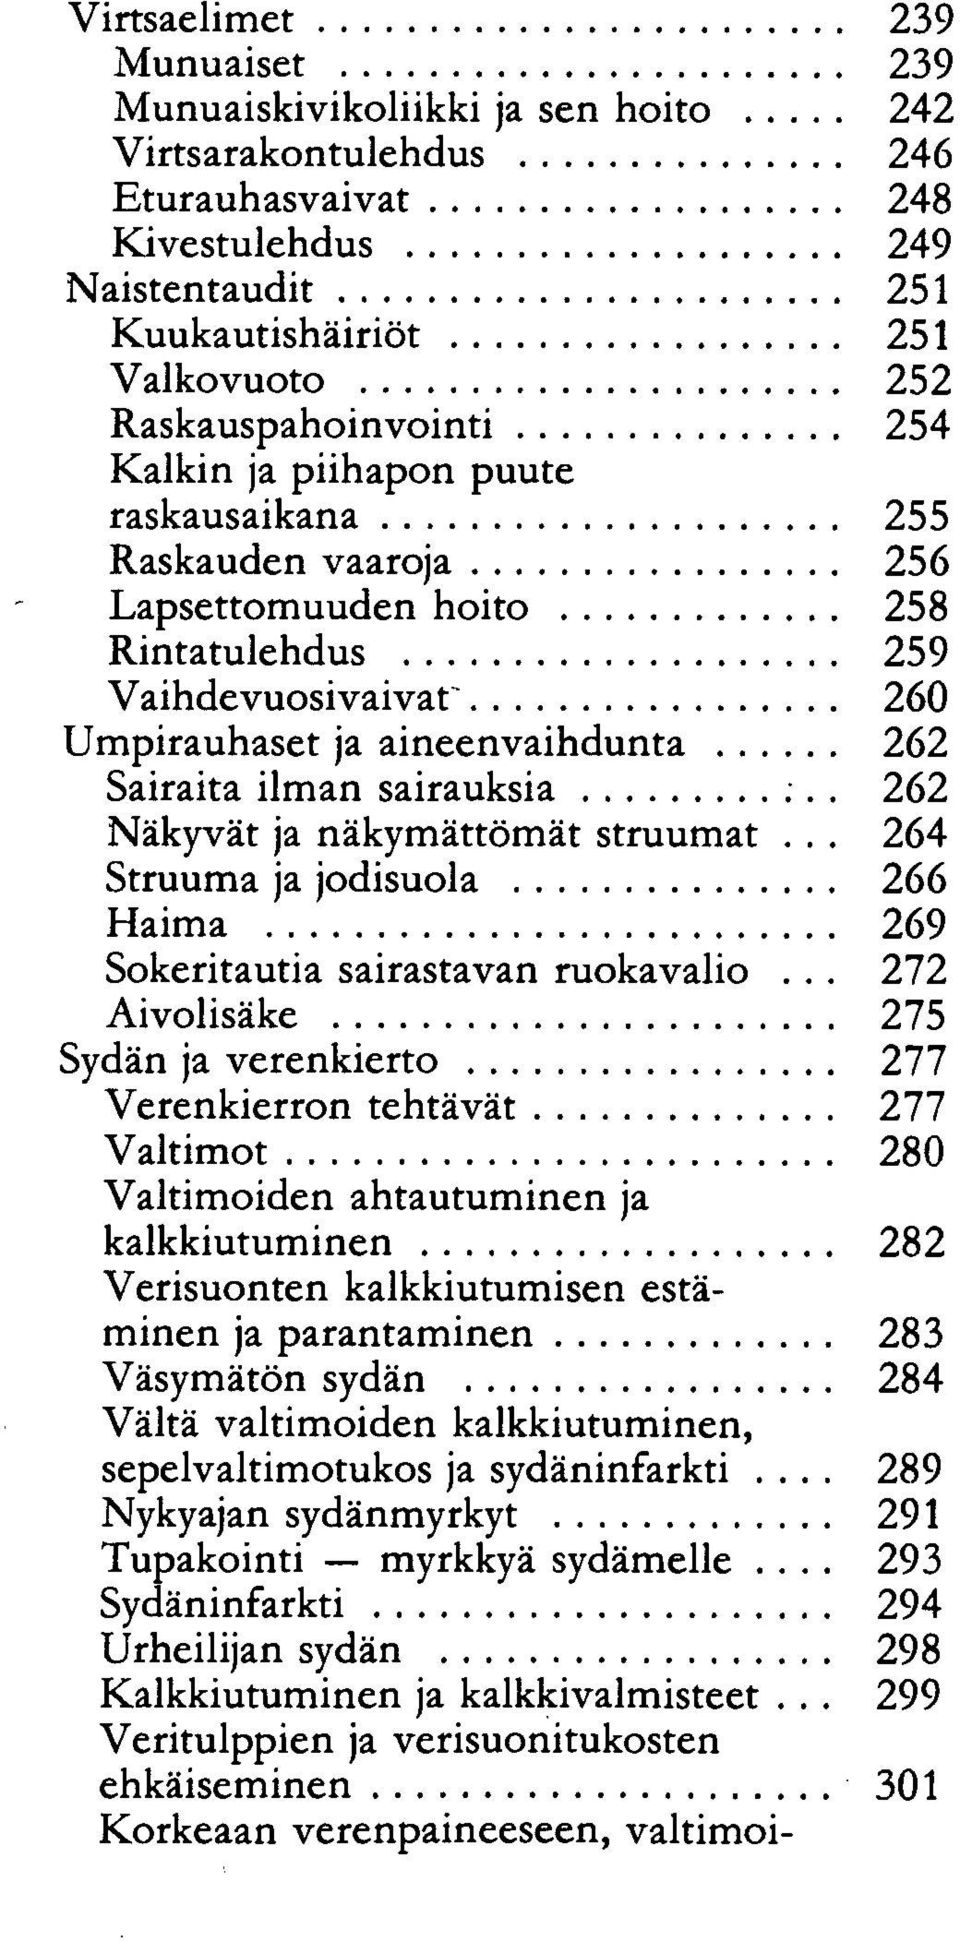 Sairaita ilman sairauksia 262 Näkyvät ja näkymättömät struumat... 264 Struuma ja jodisuola 266 Haima 269 Sokeritautia sairastavan ruokavalio.